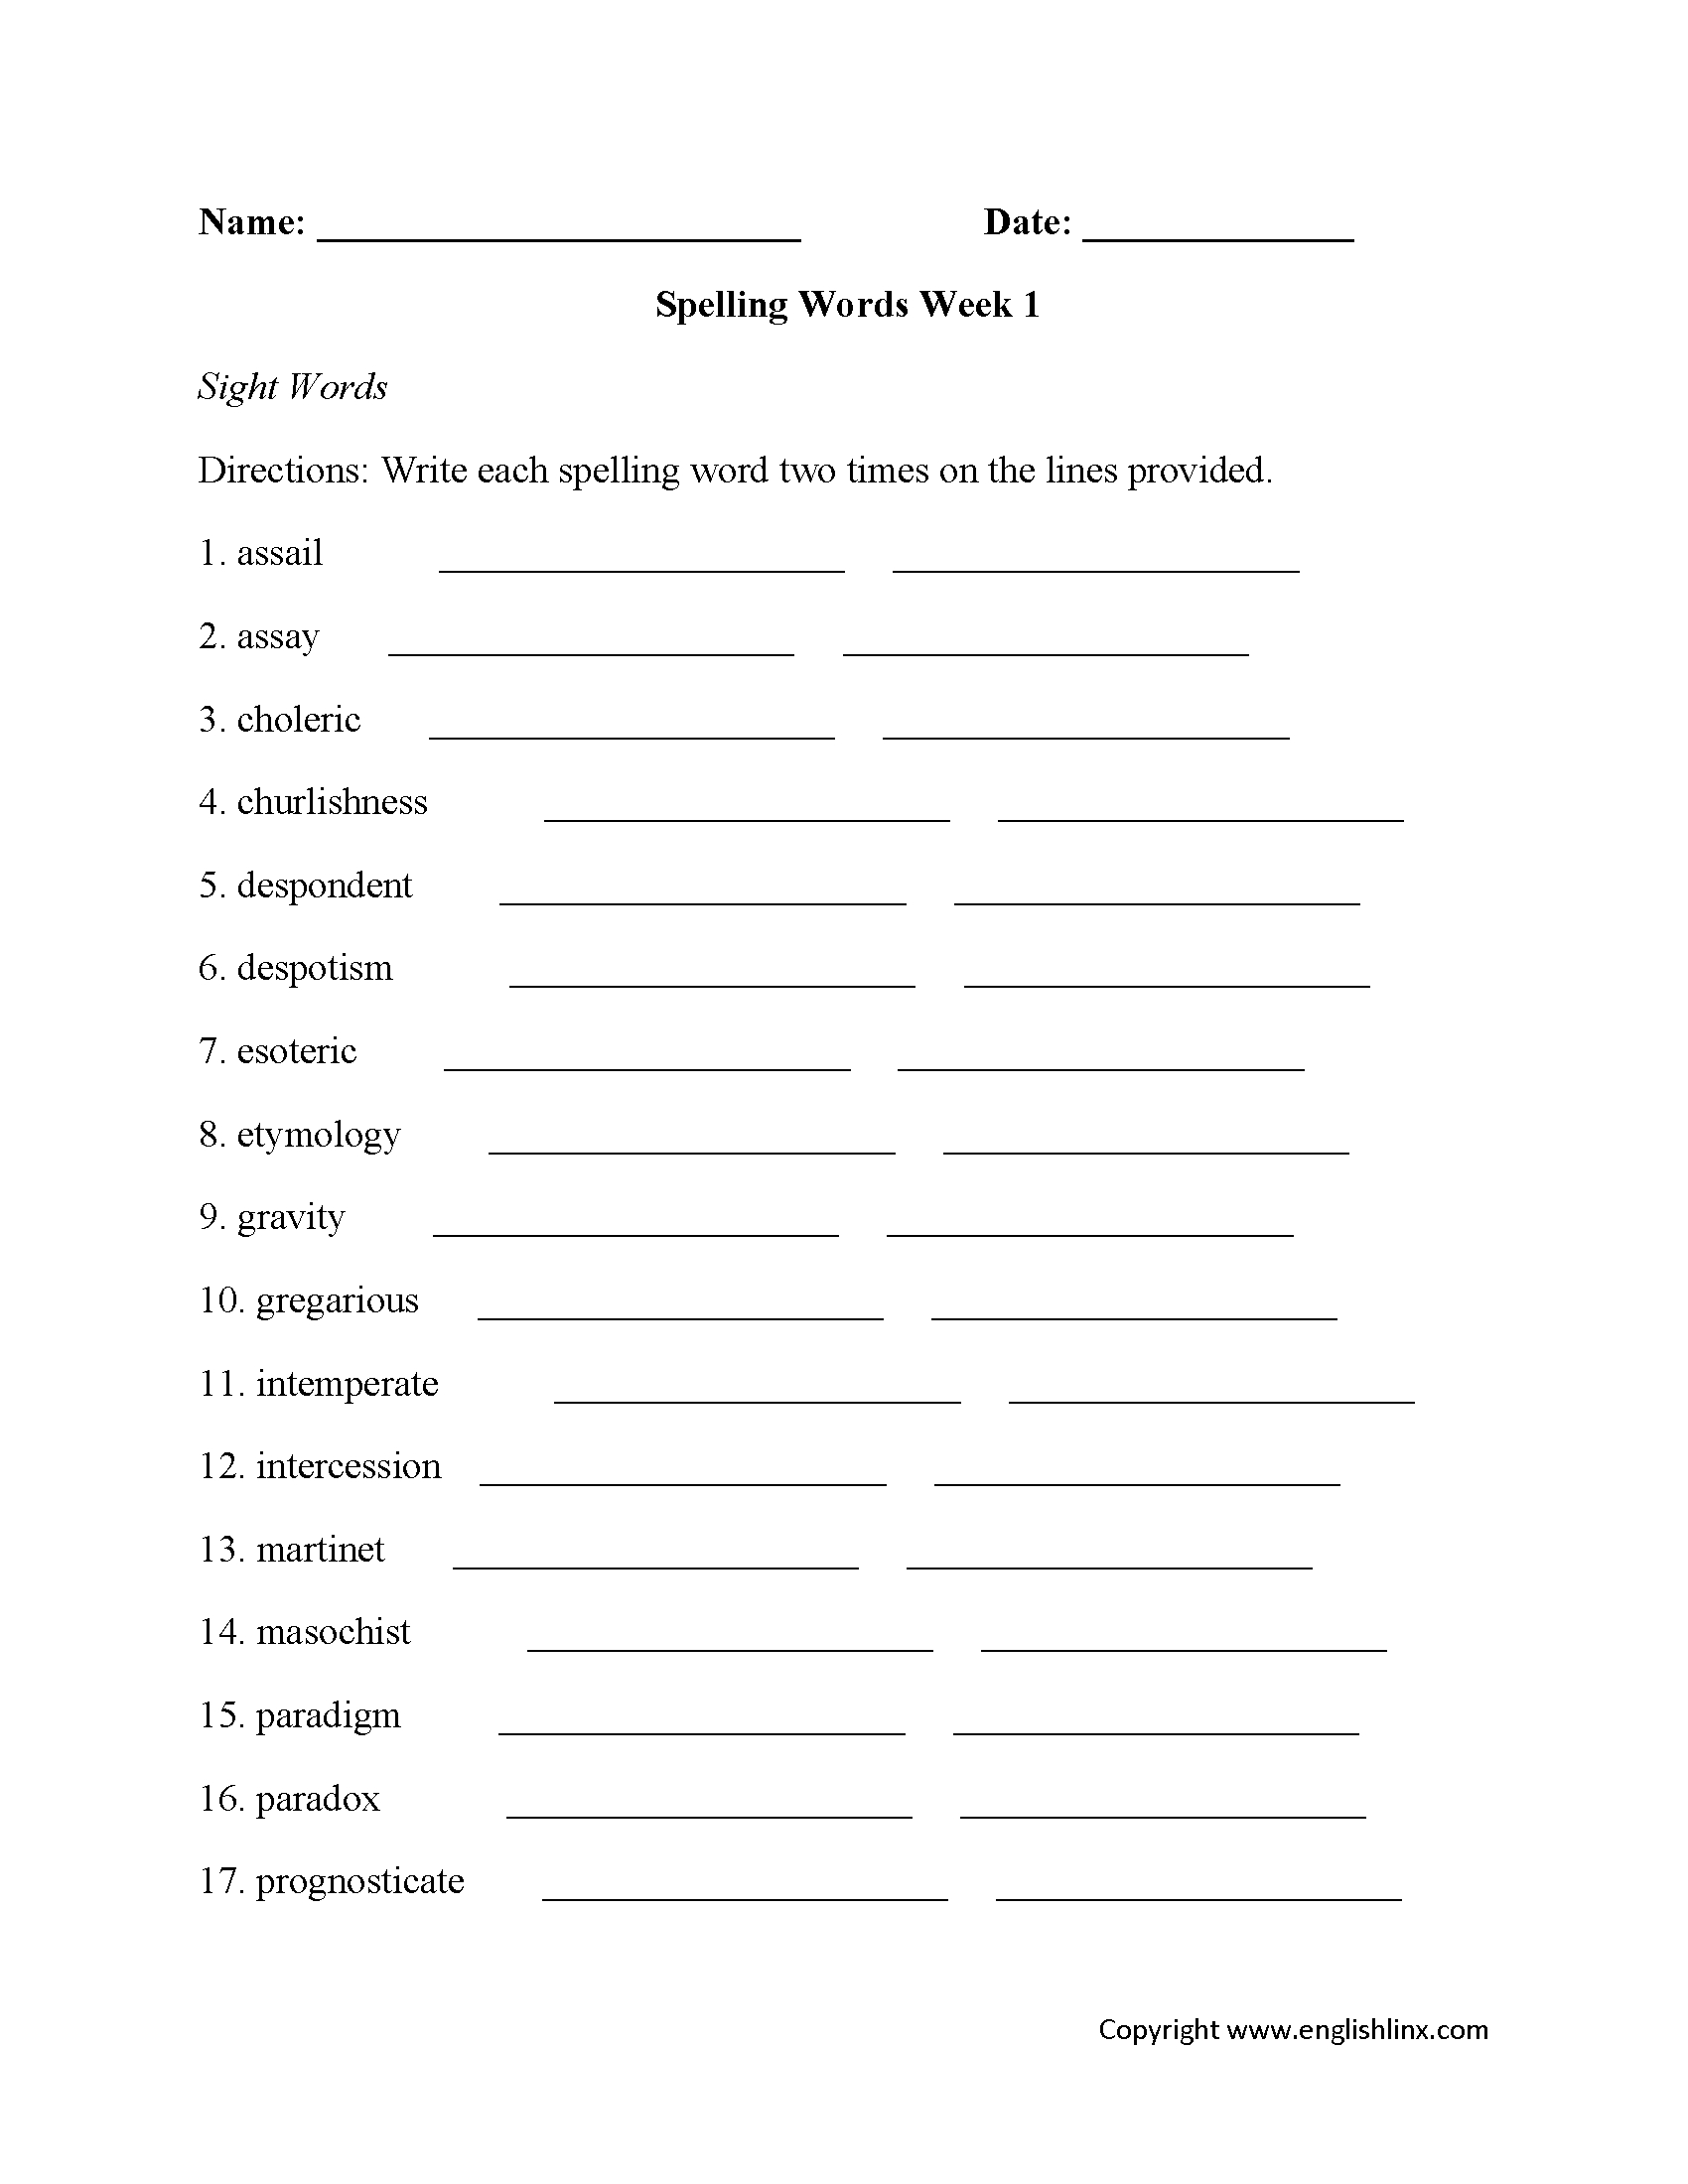 Spelling Worksheets | High School Spelling Worksheets throughout 7Th Grade Spelling Worksheets Free Printable